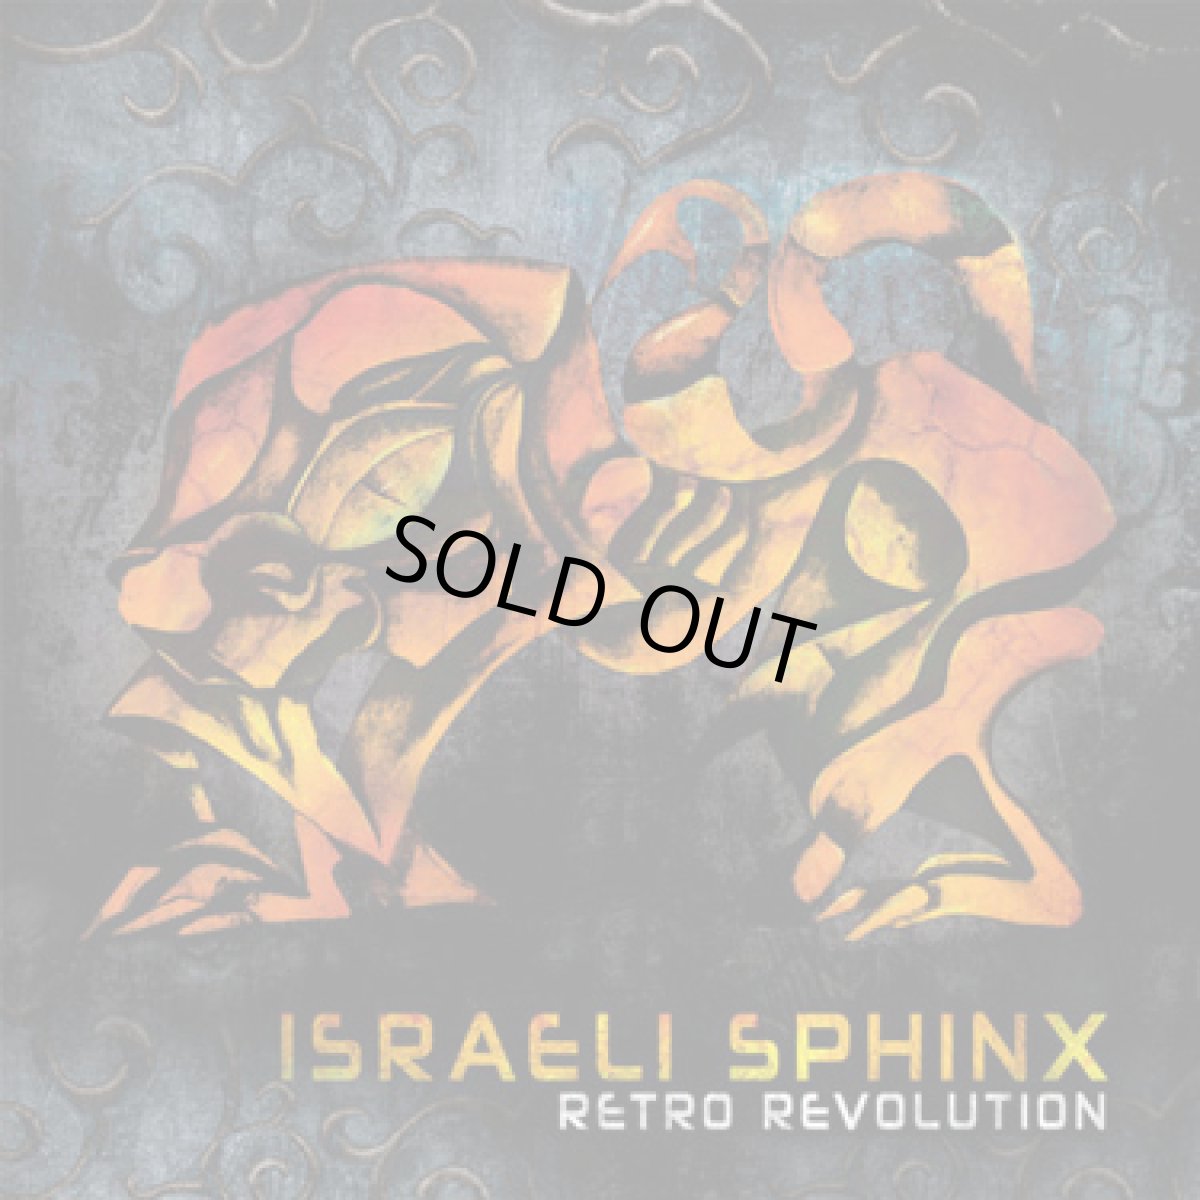 画像1: CD「ISRAELI SPHINX / Retro Revolution」【フルオン・PSYトランス】 (1)